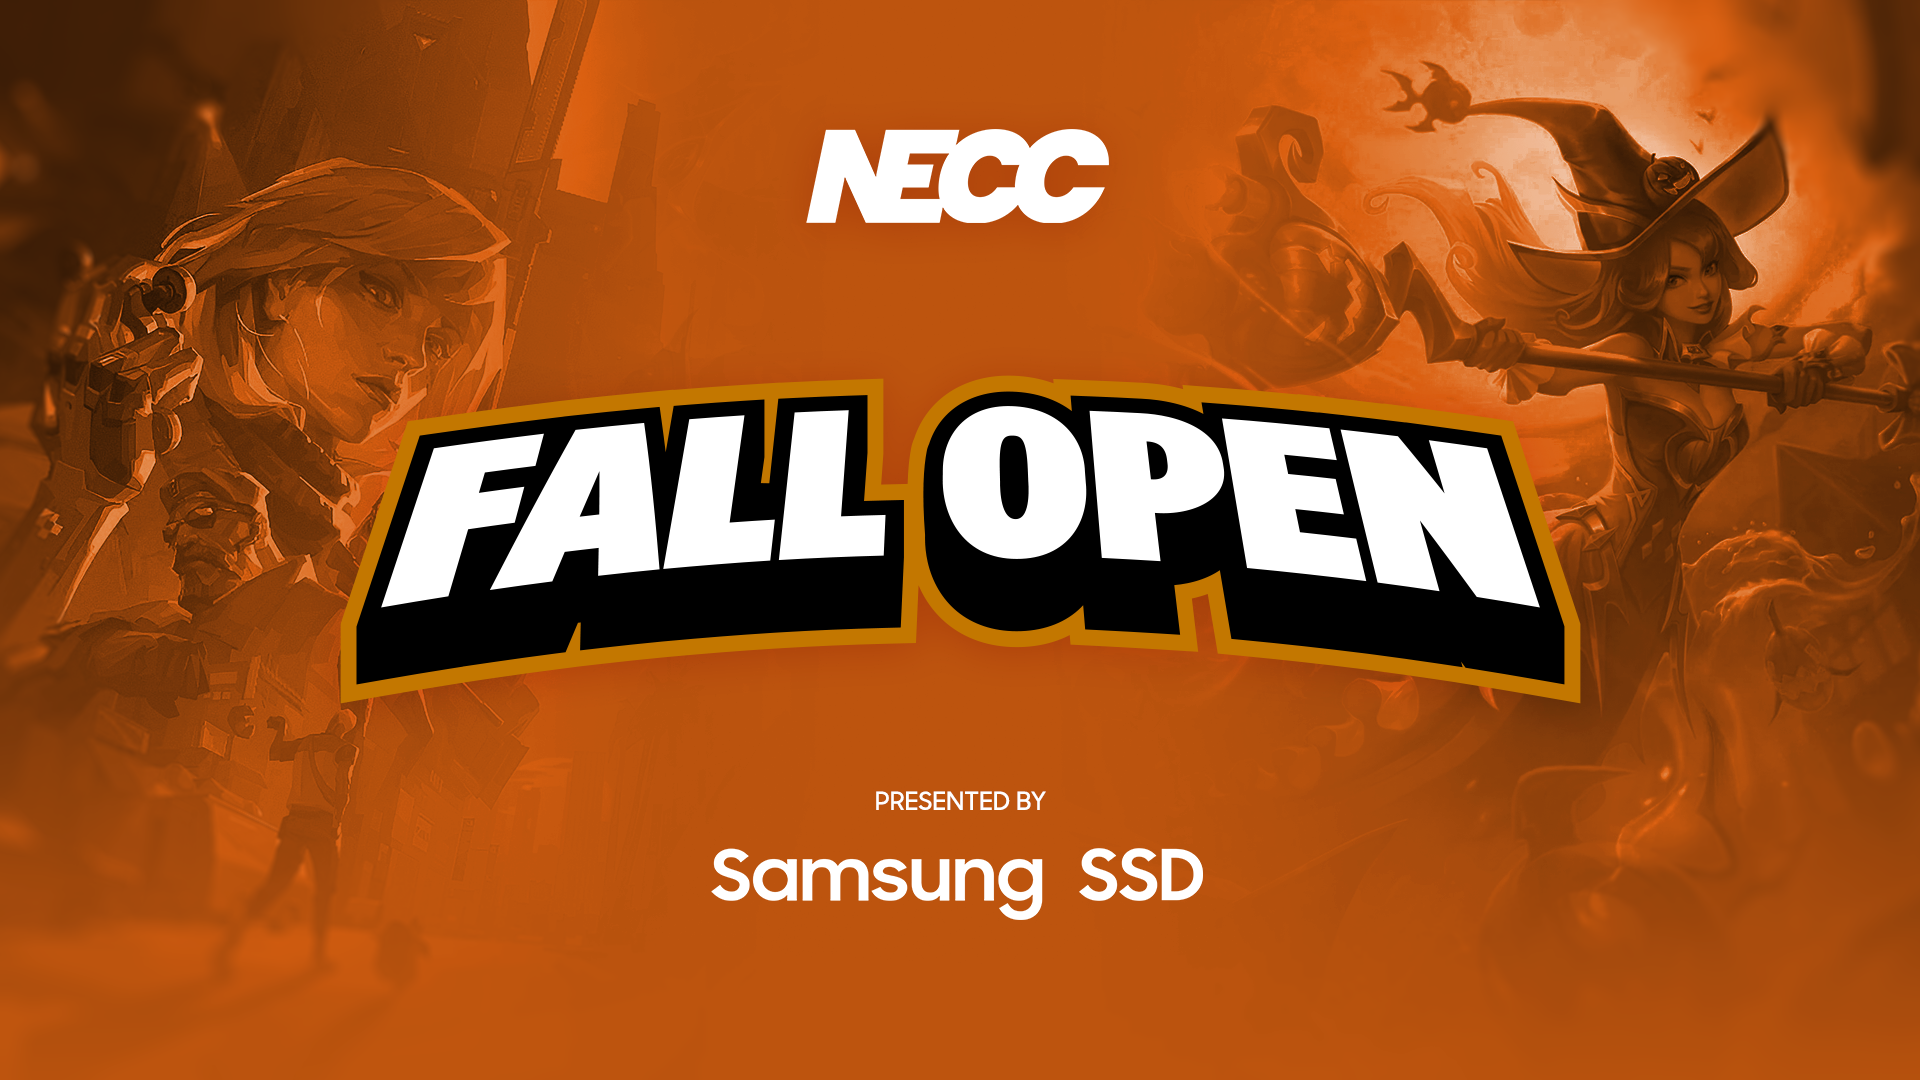 NECC Announces Samsung SSD Fall Open Valorant Tournament Series